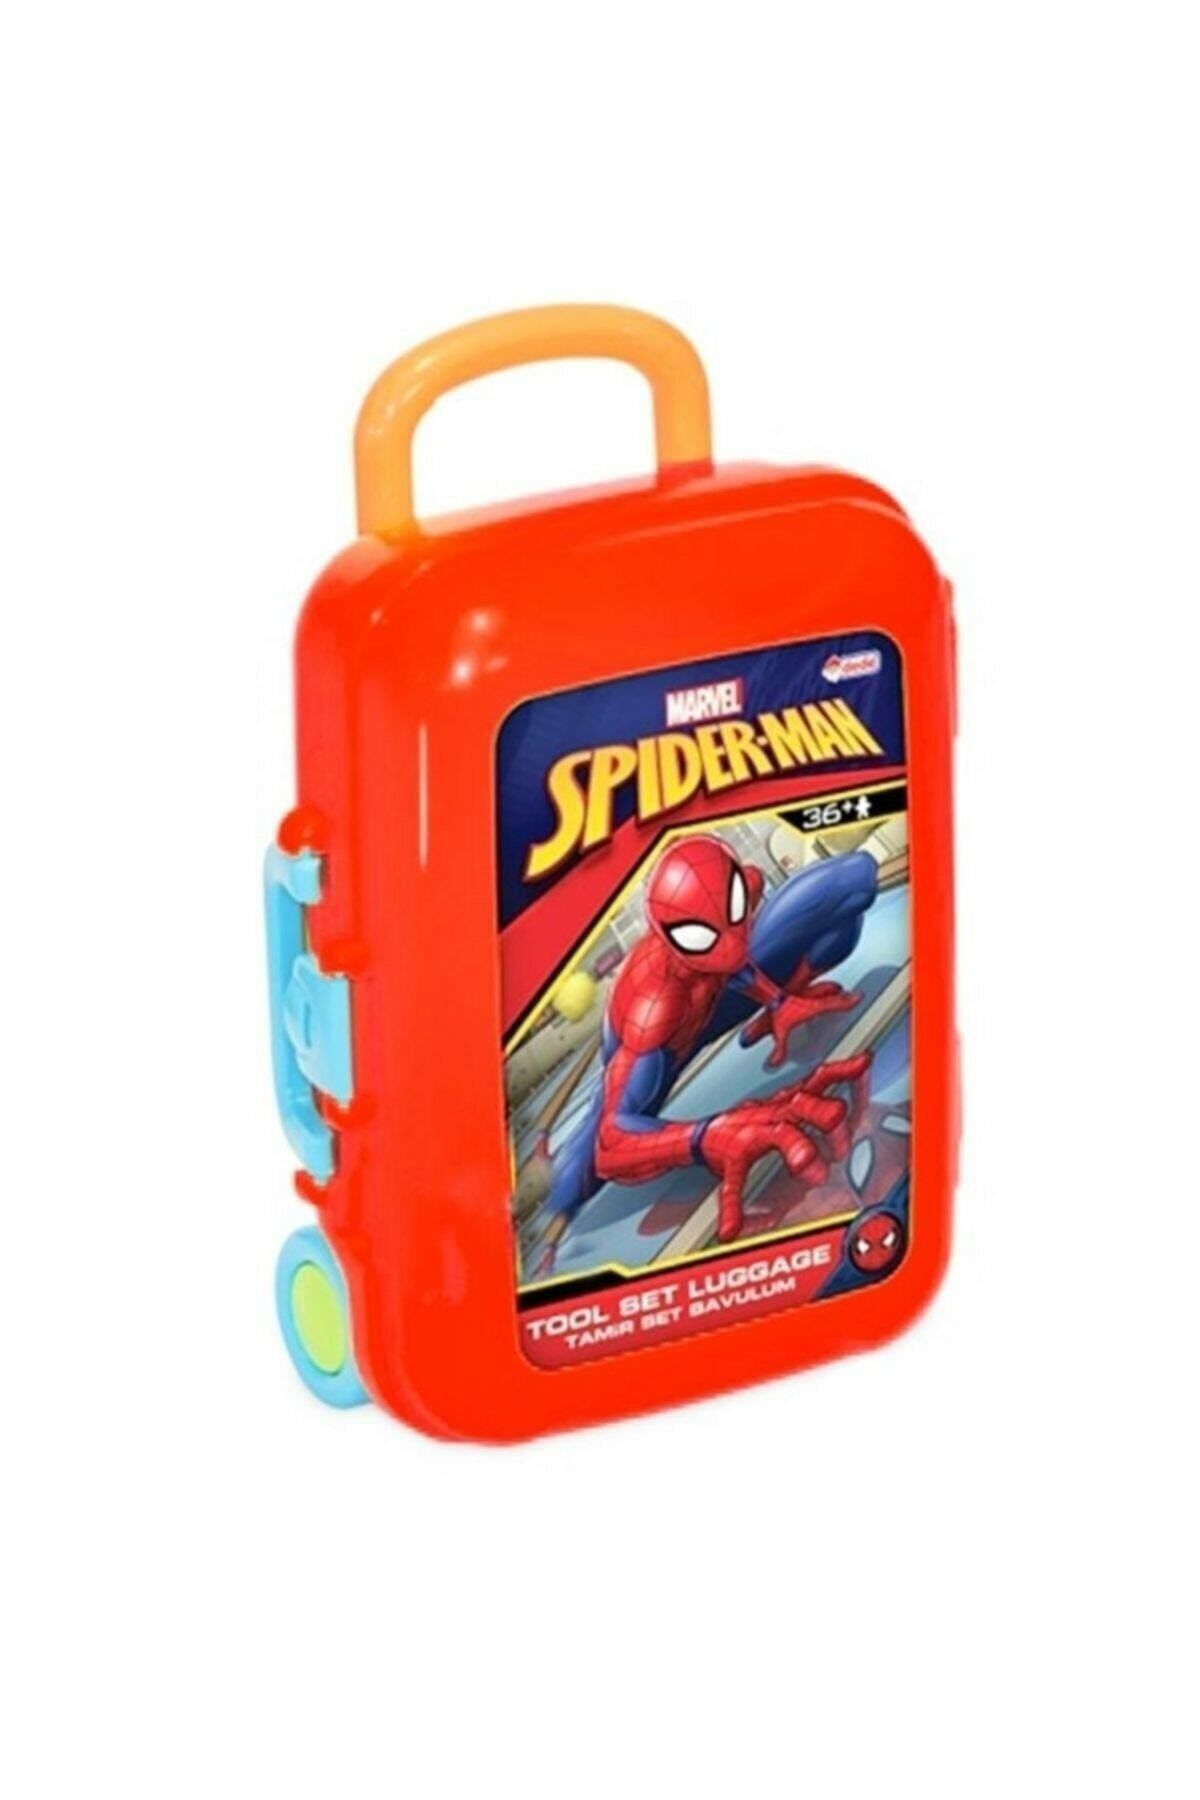 Spiderman Dede Spiderman Teknik Tamir Bavulum 03484